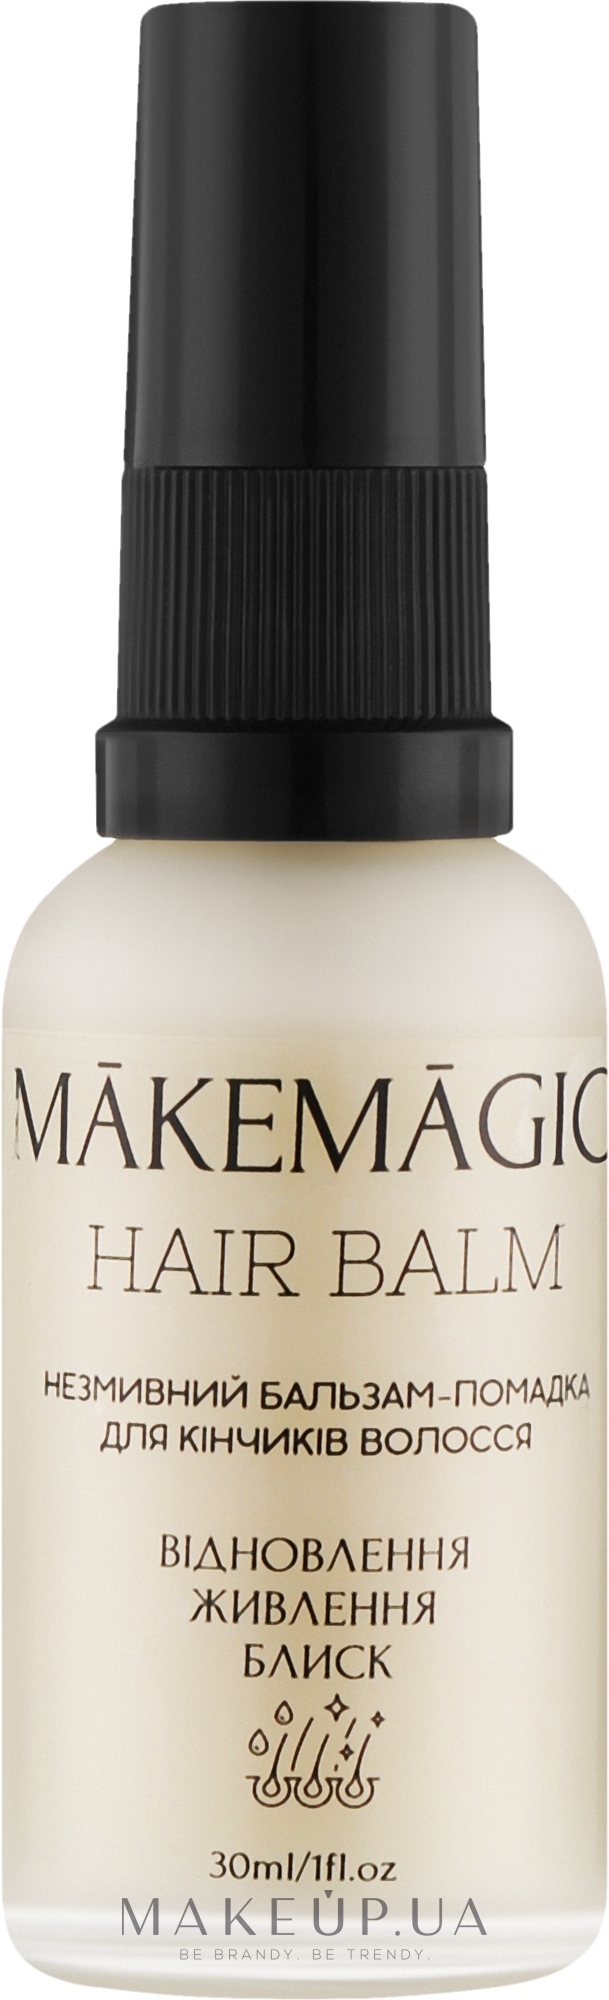 Незмивна помадка-бальзам для кінчиків волосся - Makemagic Hair Balm — фото 30ml